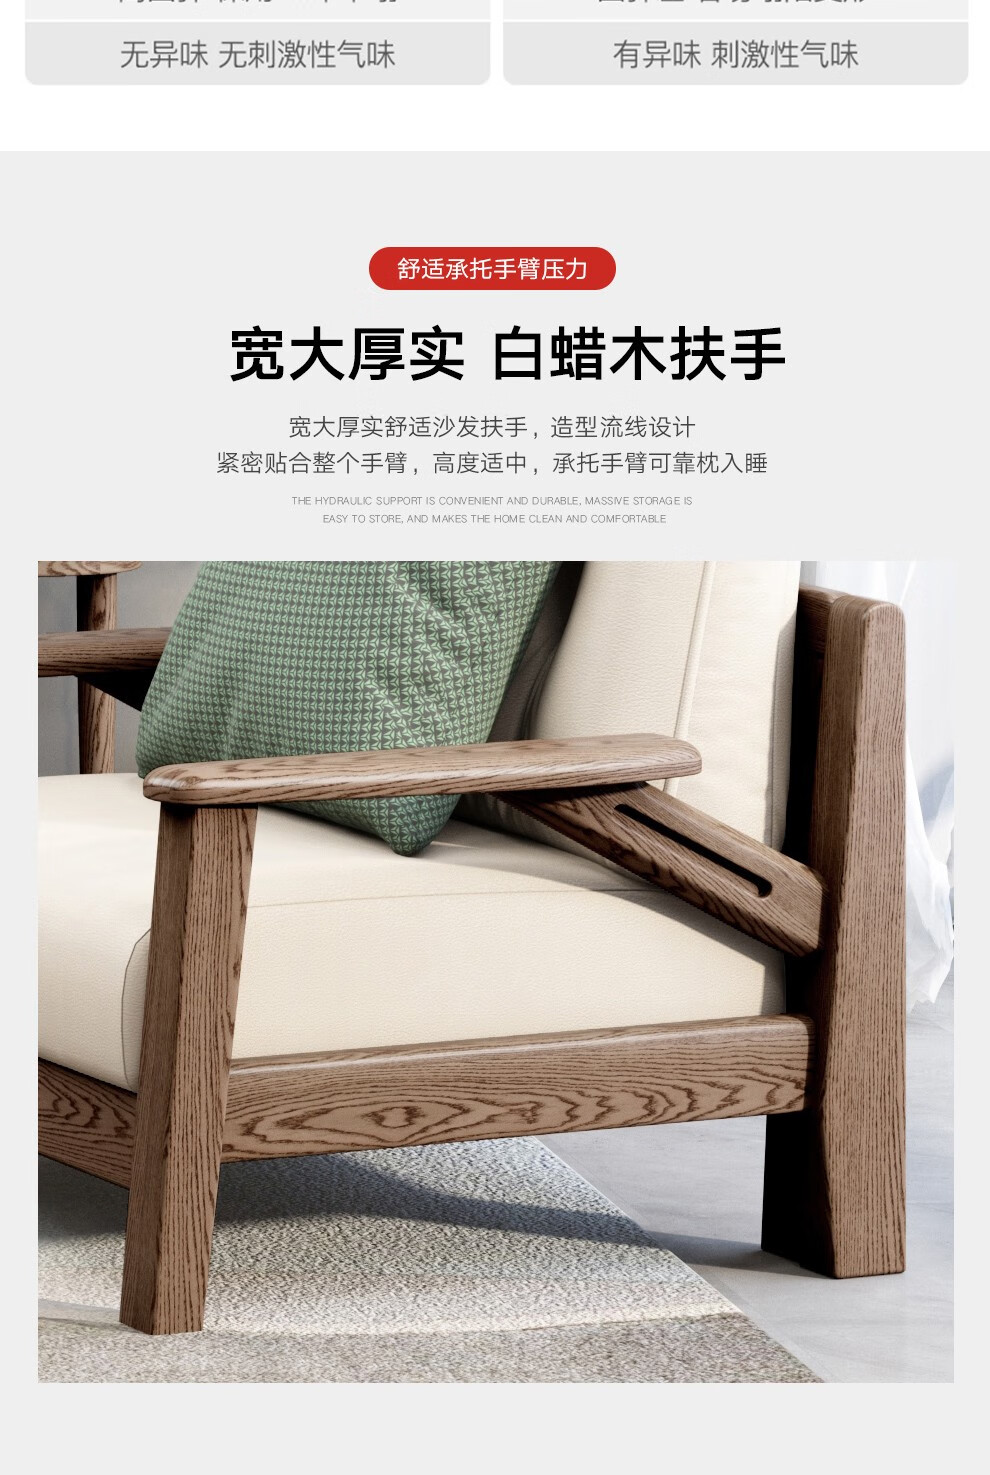 木可馨 实木沙发 全白蜡木纯原木沙发轻奢现代别墅客厅沙发组合木质